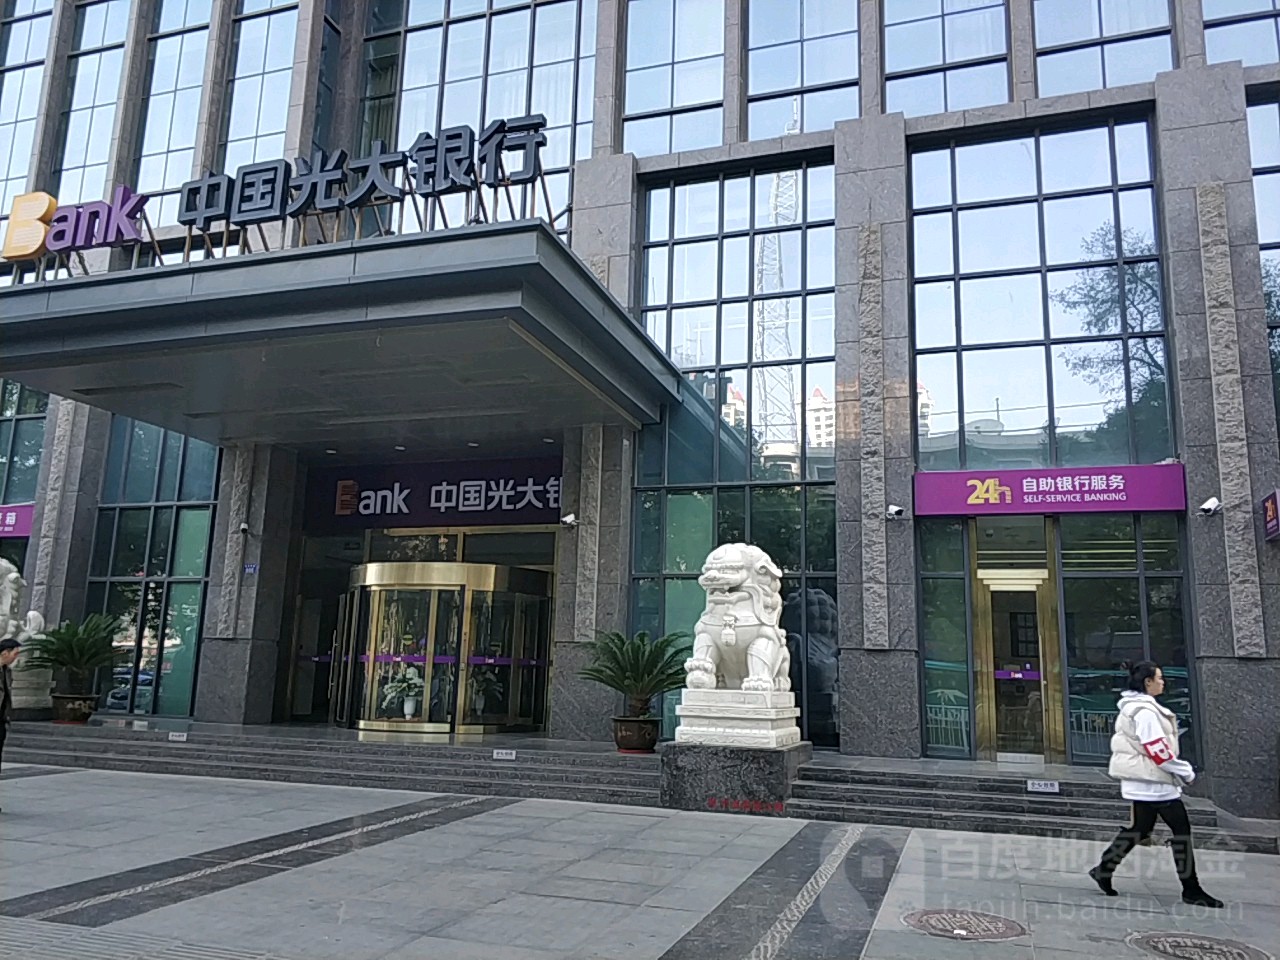 中國光大銀行24h自助銀行服務(蘭州分行營業部)